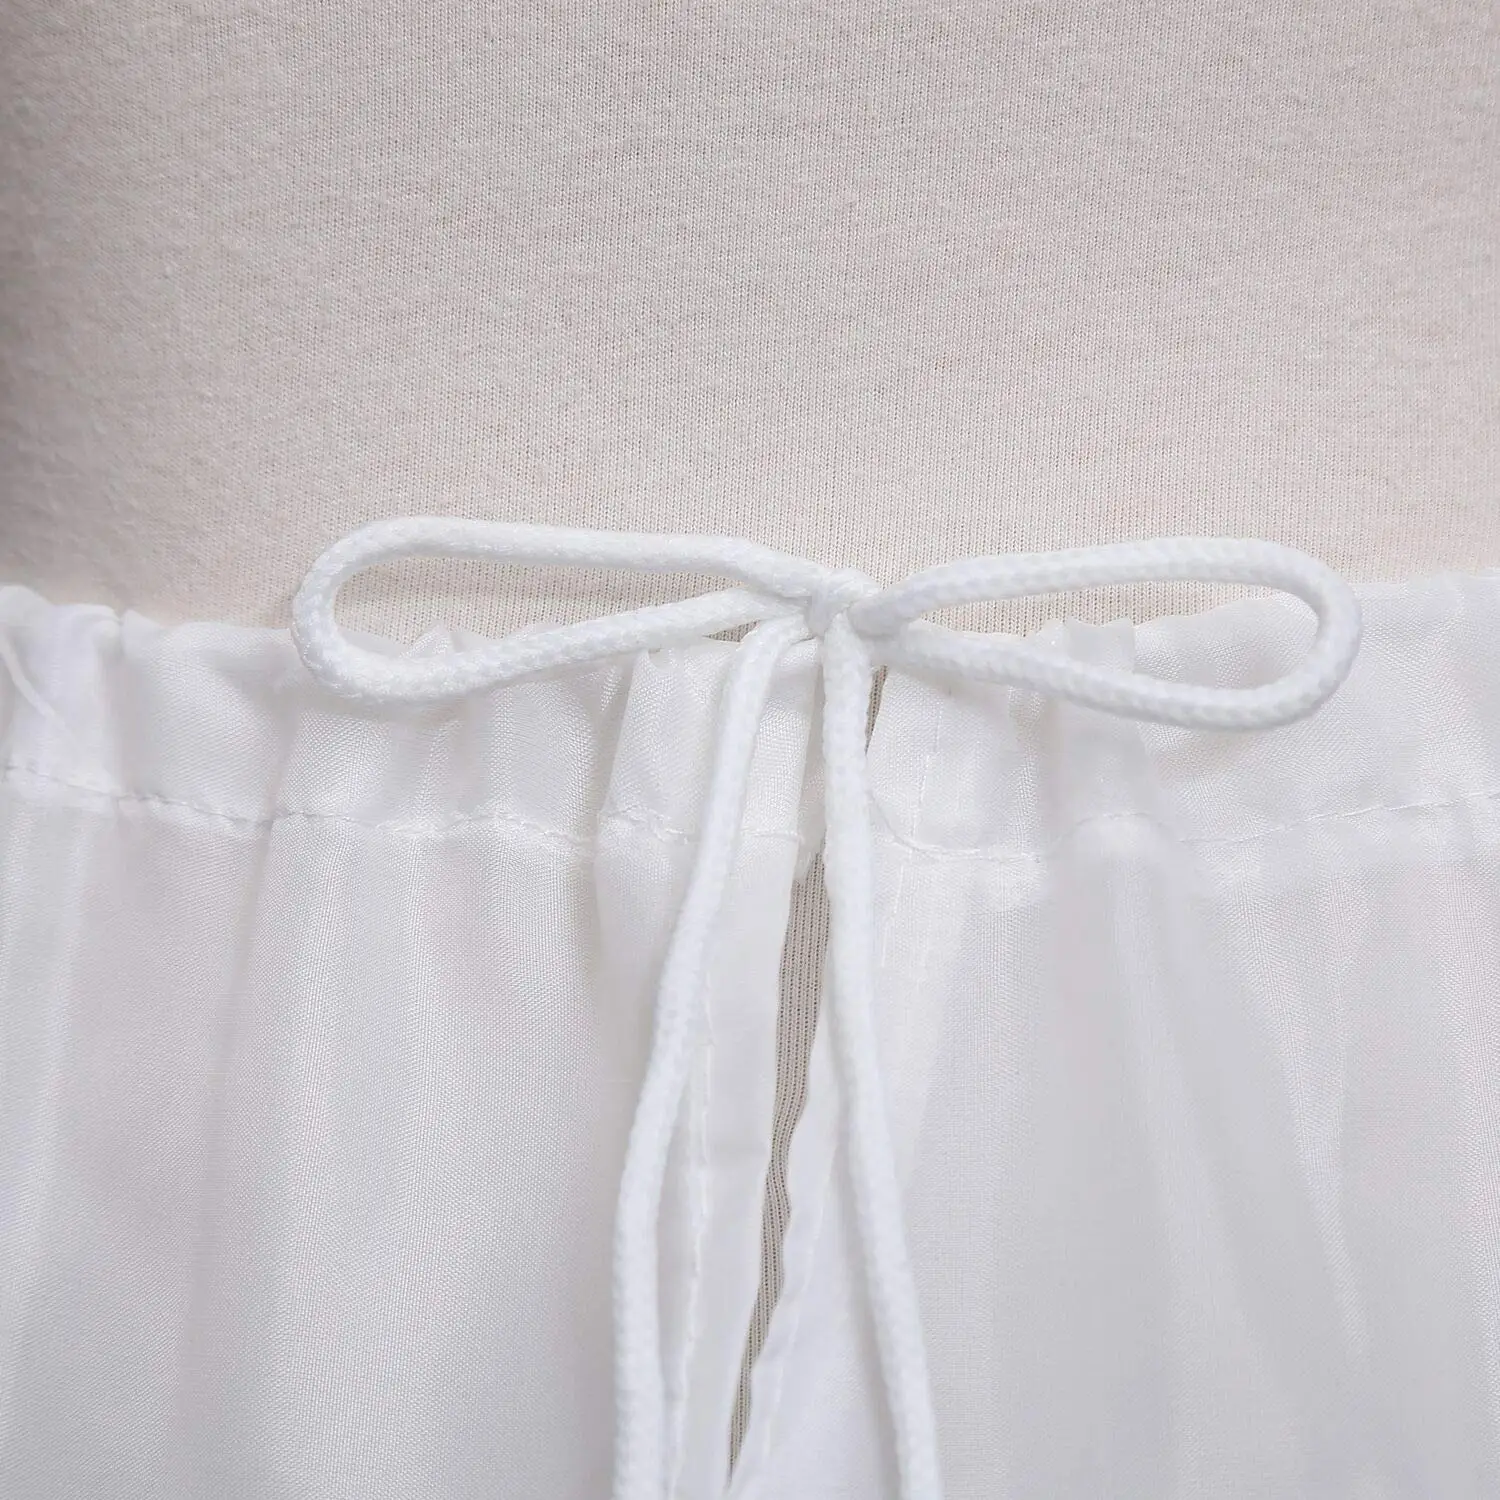 Горячая распродажа, нижняя юбка с 3 обручами для девочек, кринолиновая юбка с цветочным узором для девочек Изображение 1